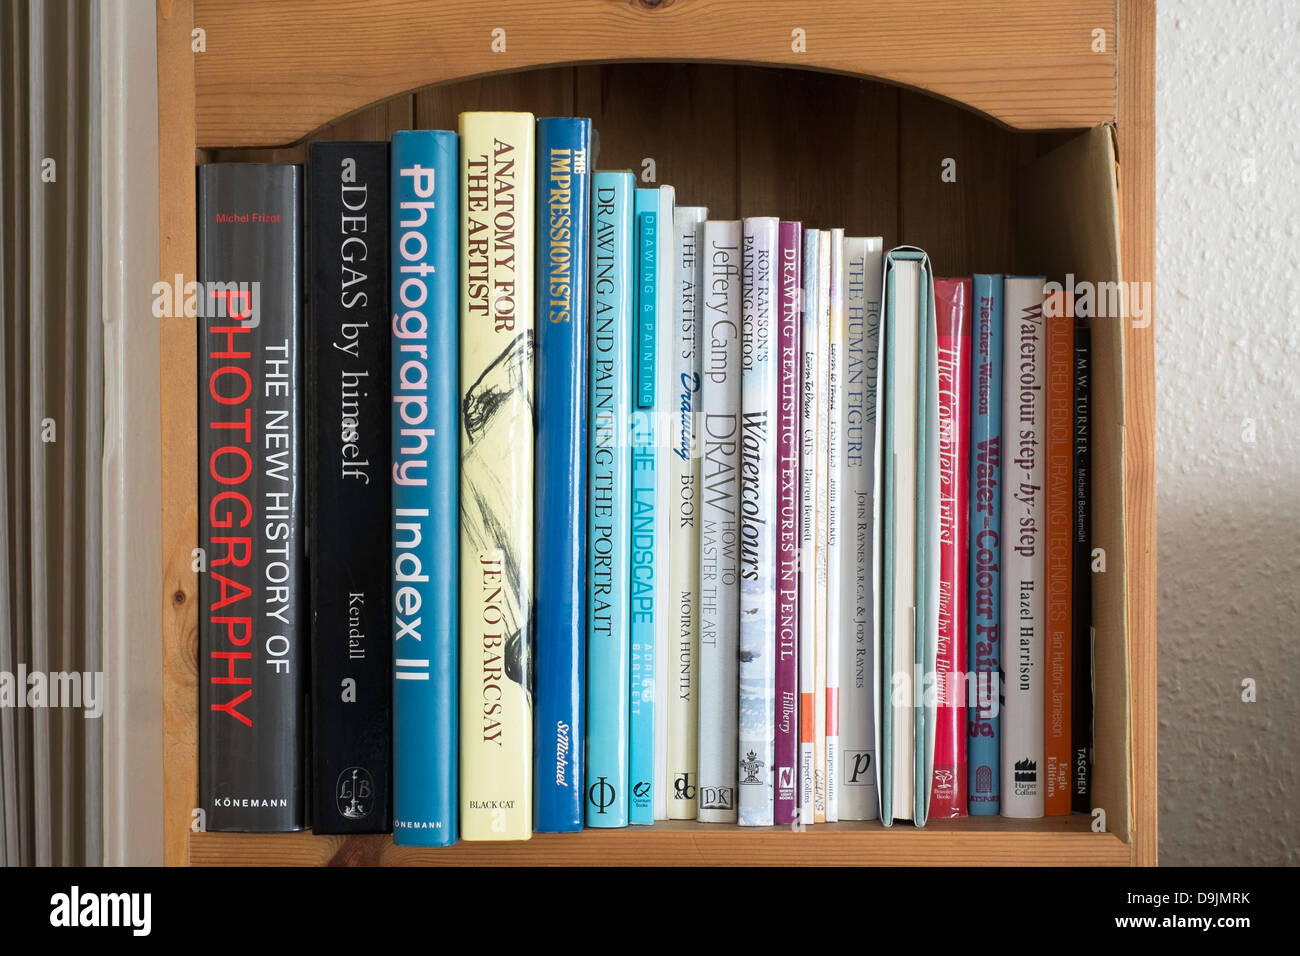 Sammlung von Kunstbüchern auf einem Bücherregal Stockfoto